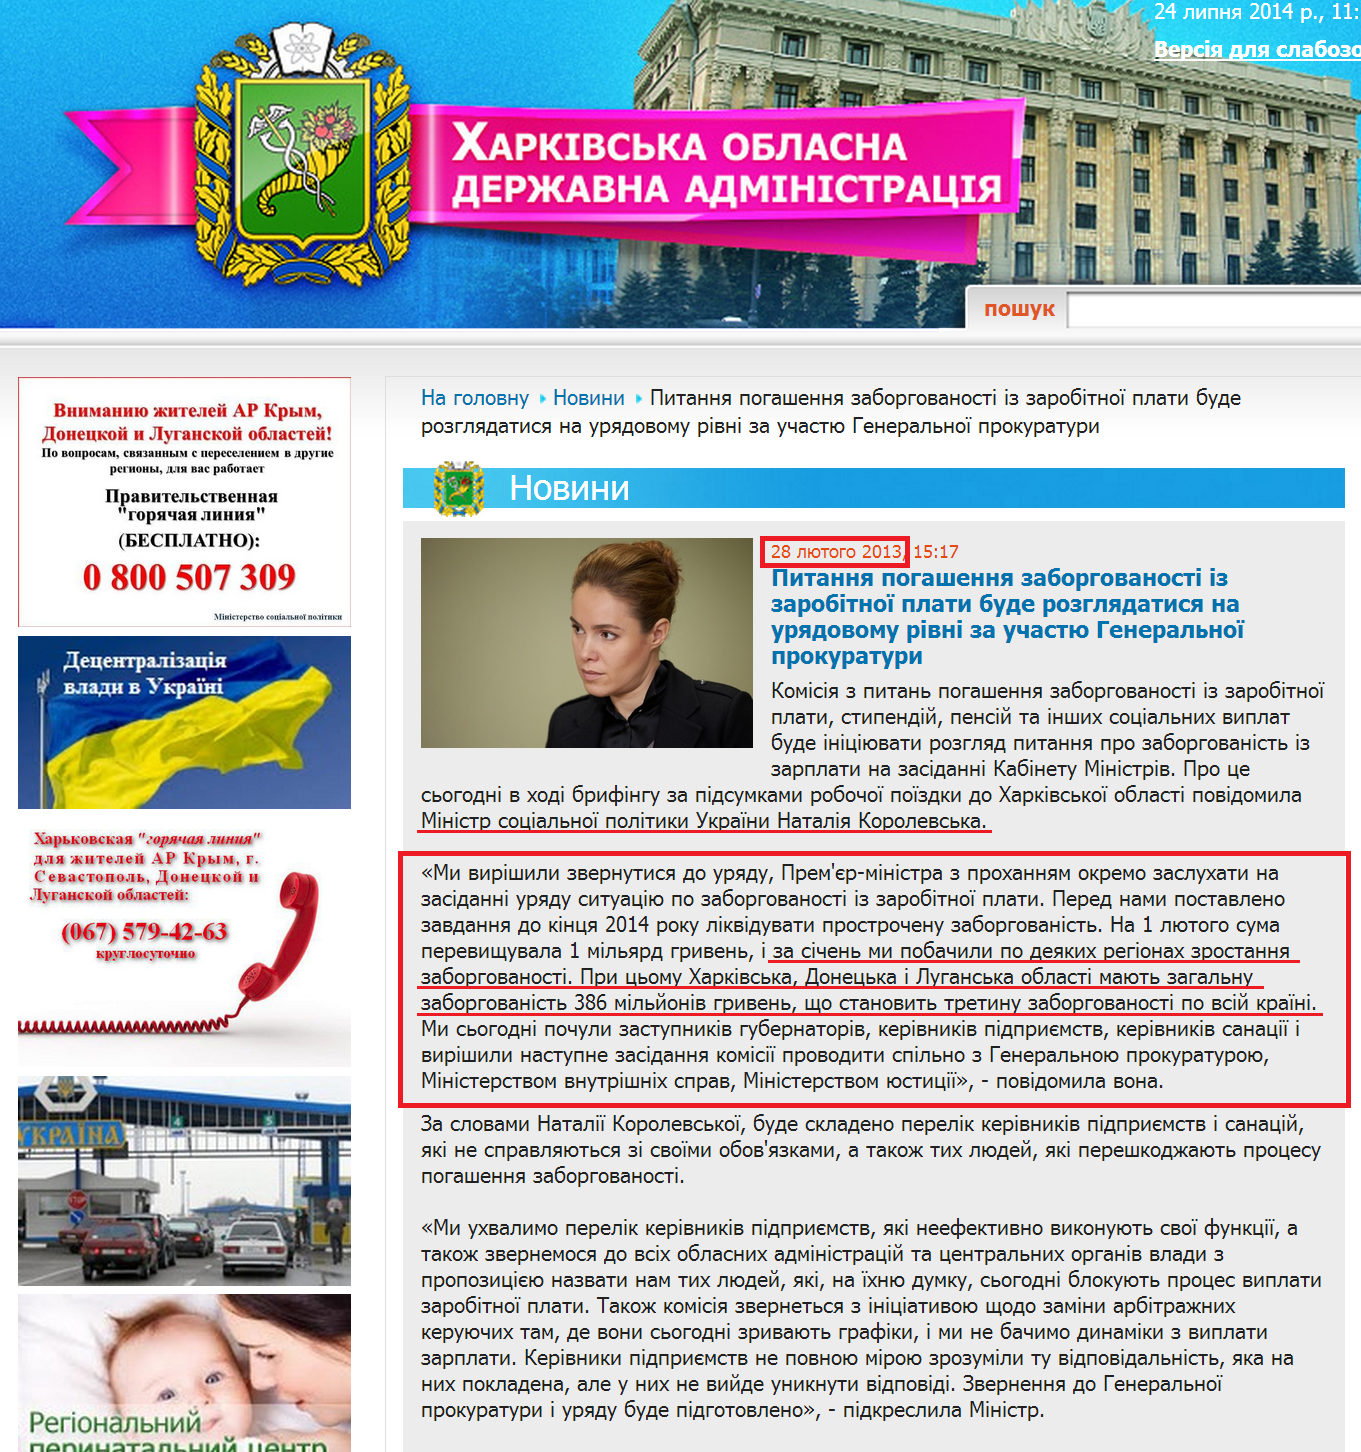 http://kharkivoda.gov.ua/uk/news/view/id/16518